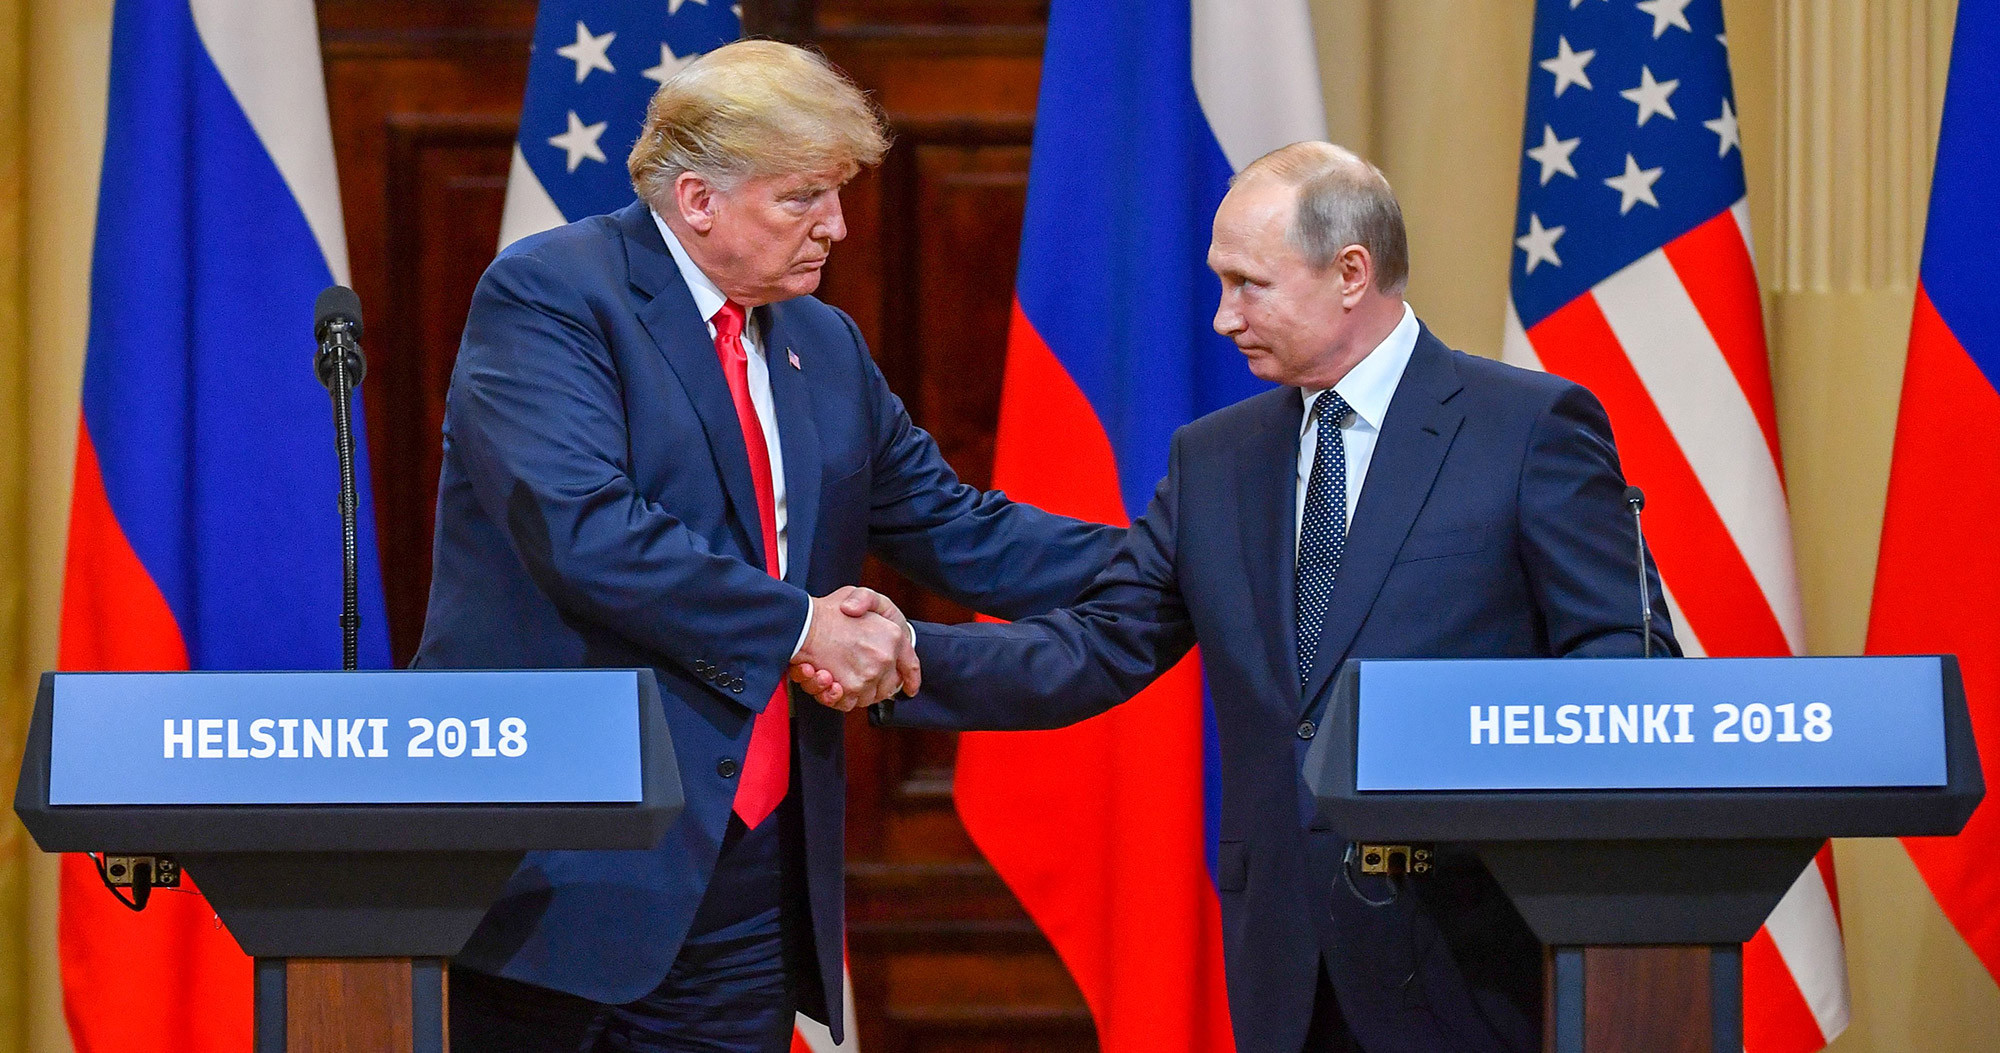 Tổng thống Nga Vladimir Putin và Tổng thống Mỹ Donald Trump tại hội nghị thượng đỉnh Mỹ-Nga diễn ra tại Helsinki (Phần Lan) năm 2018. Ảnh: CNN